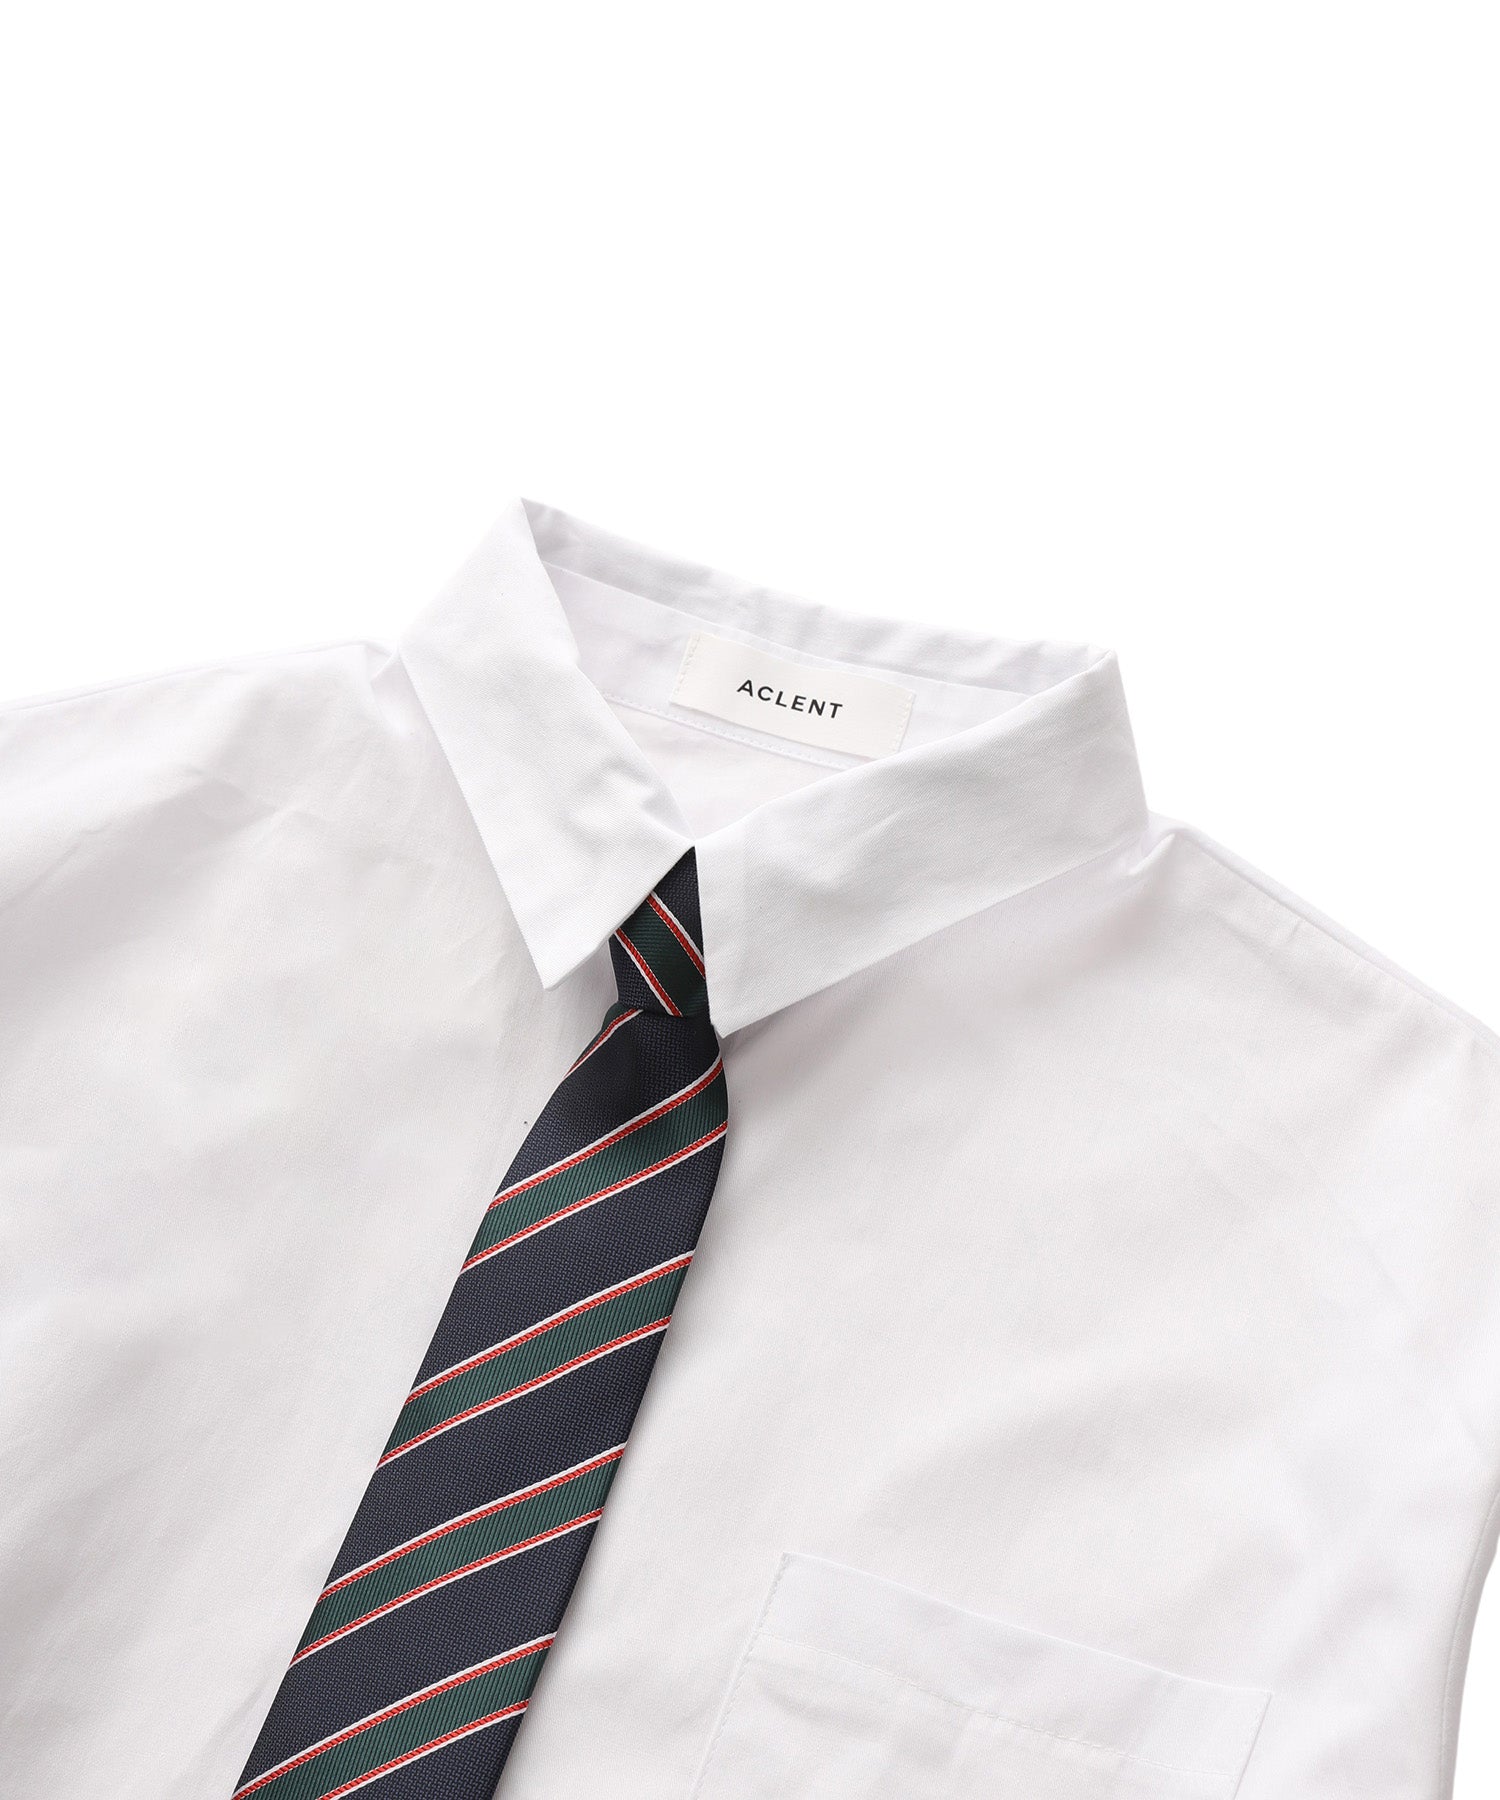 Tie set over shirt